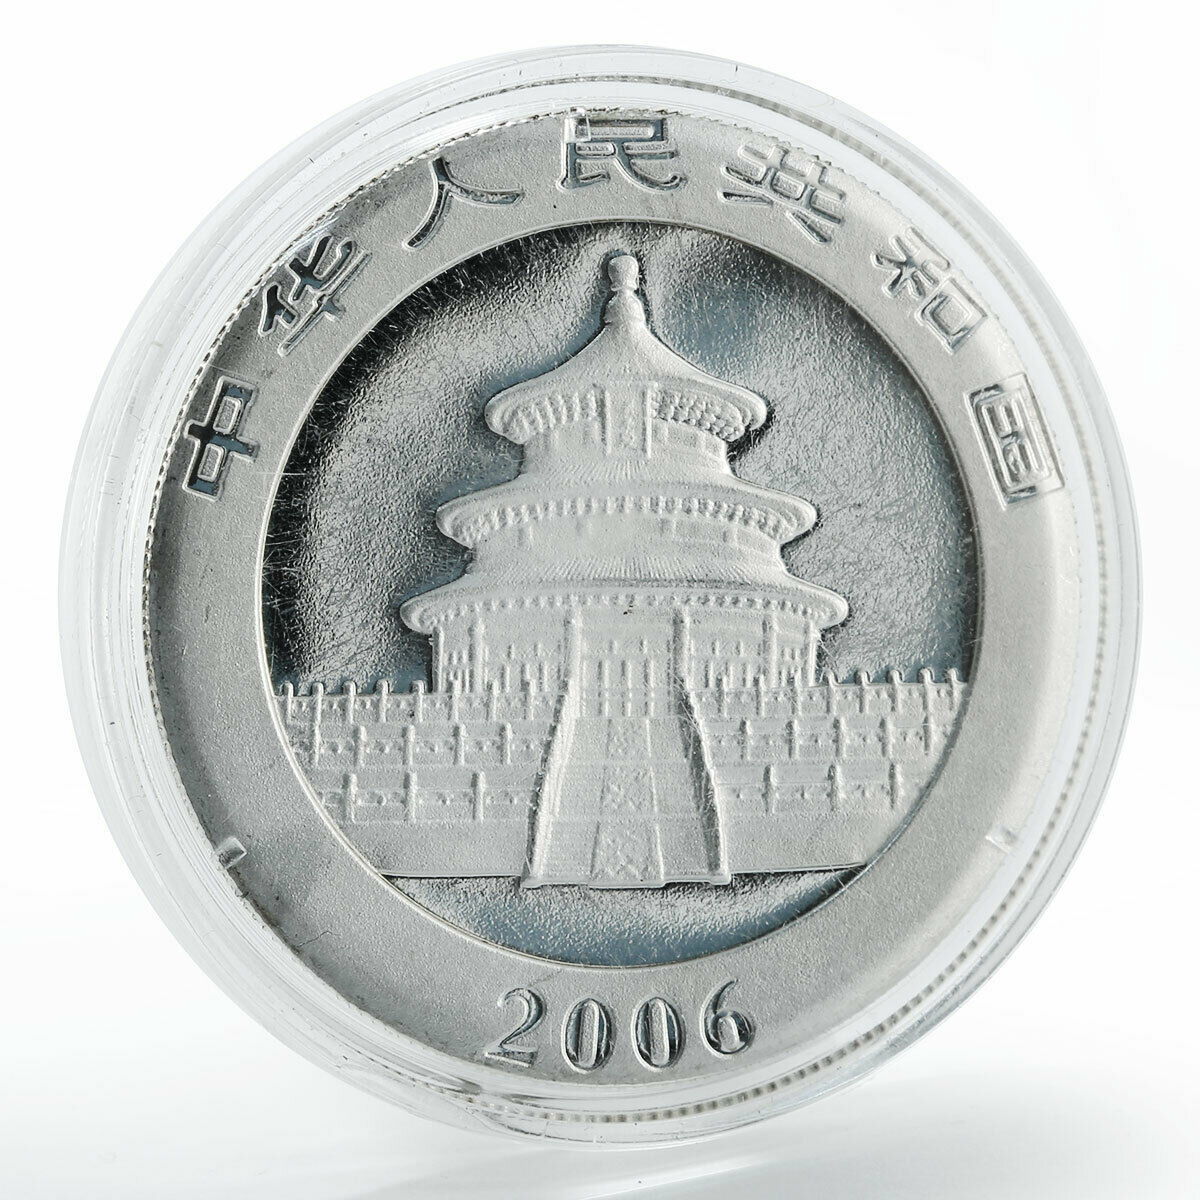 China 10 yuan Panda Series proof silver coin 2006